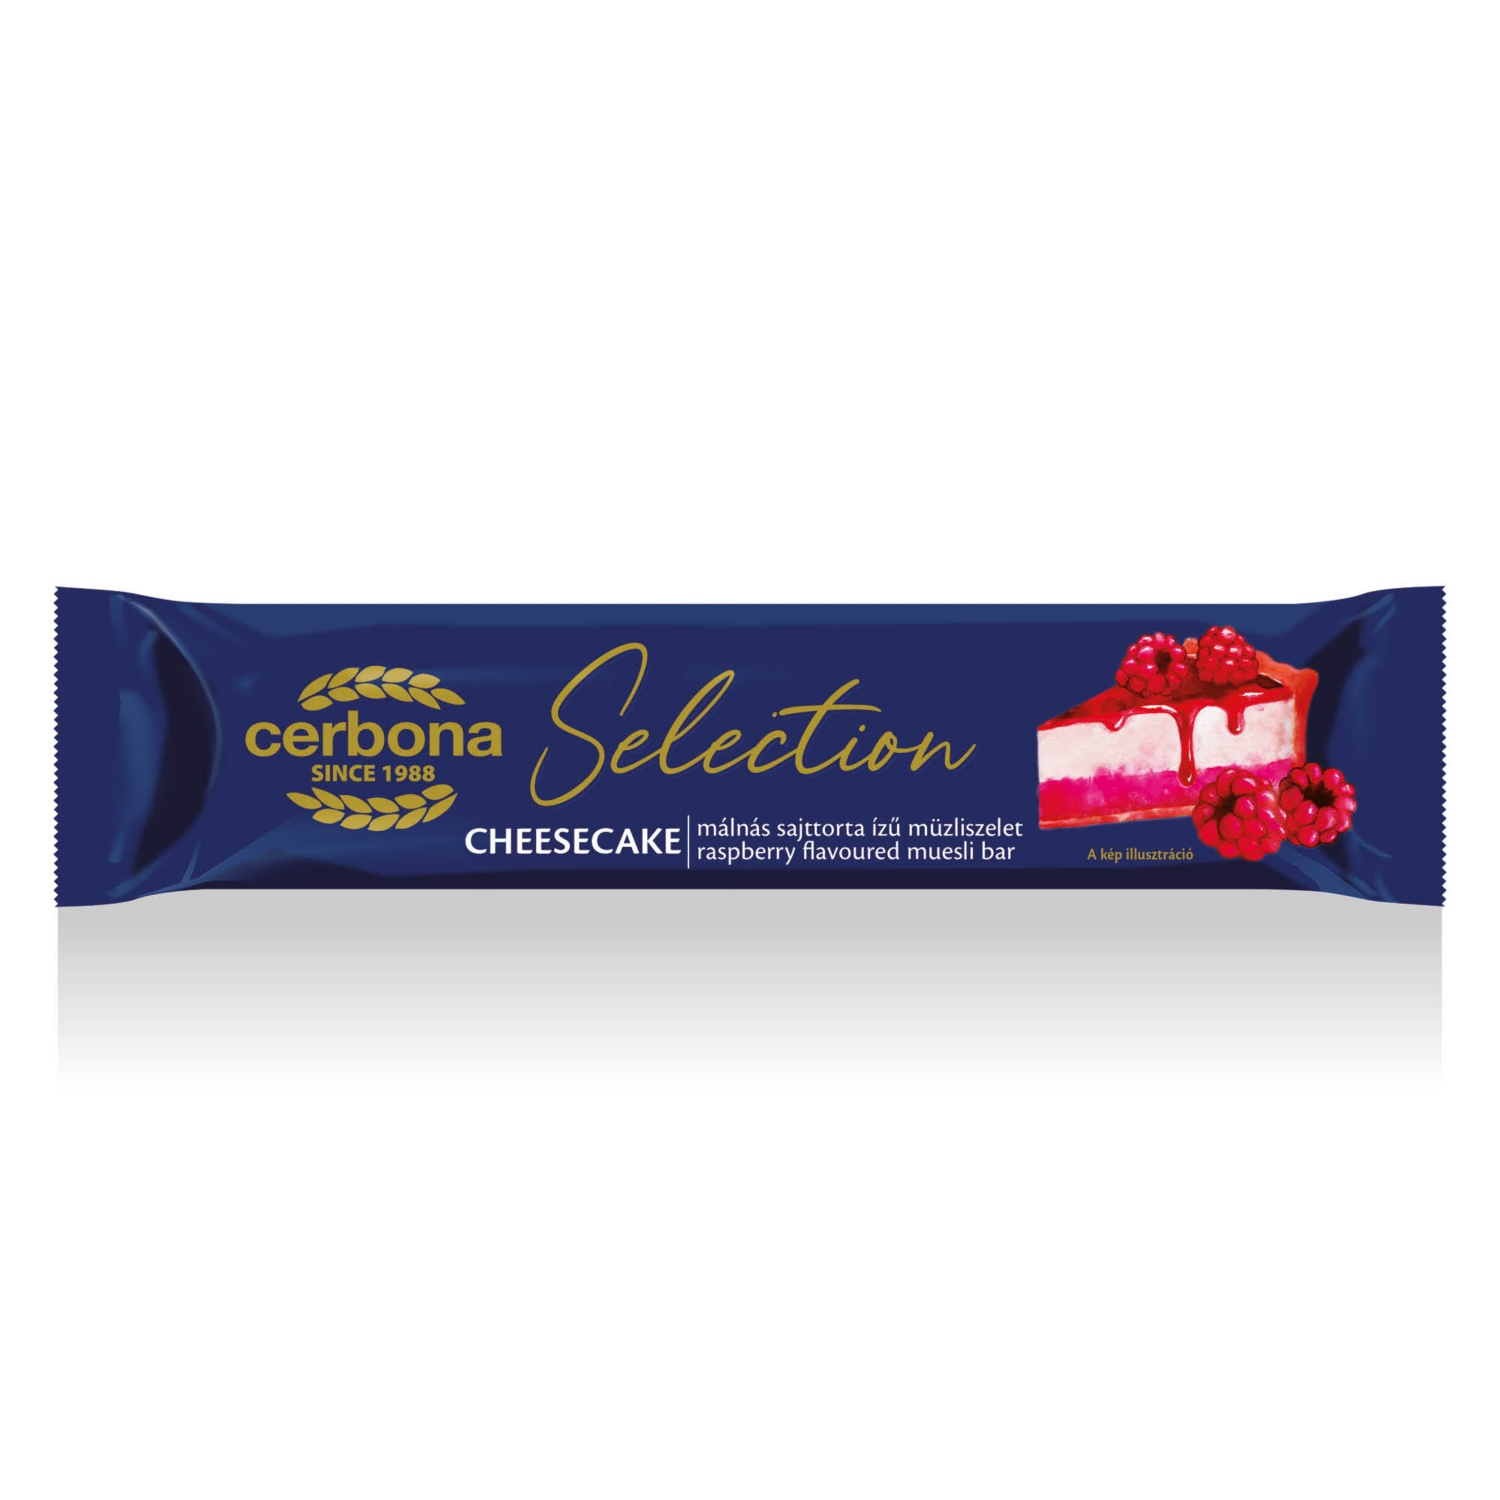 CERBONA Selection müzliszelet, 22 g, málnás sajttortaízű